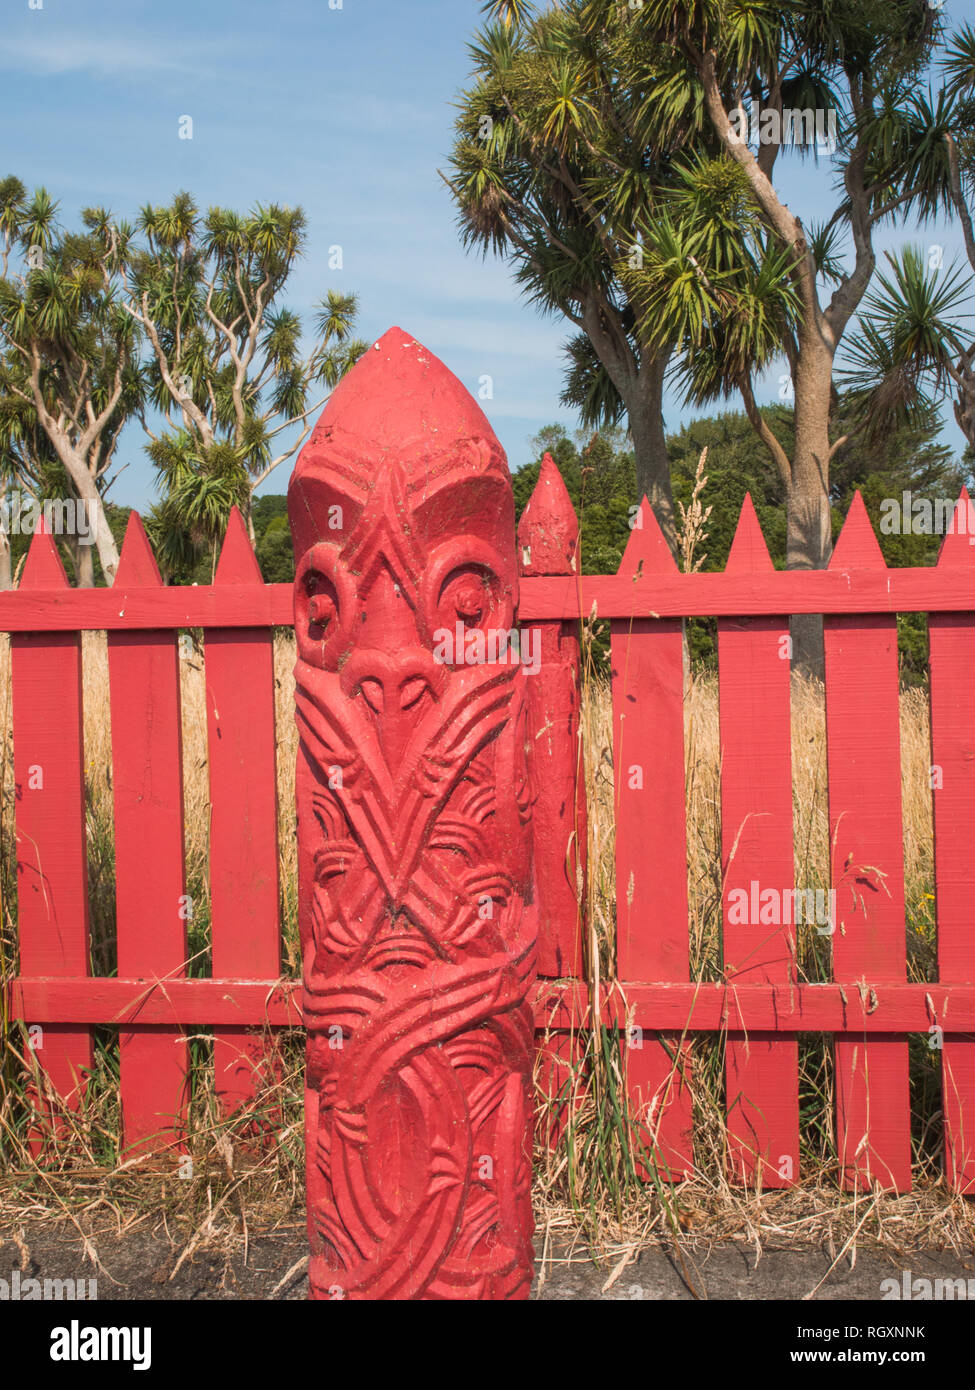 Pou whenua post in tuahu sacred enclosure, Turuturu Mokai pa, Hawera, Taranaki, New Zealand. Ngati Tupaia hapu of Ngati Ruanui are kaitiaki guardians. Stock Photo